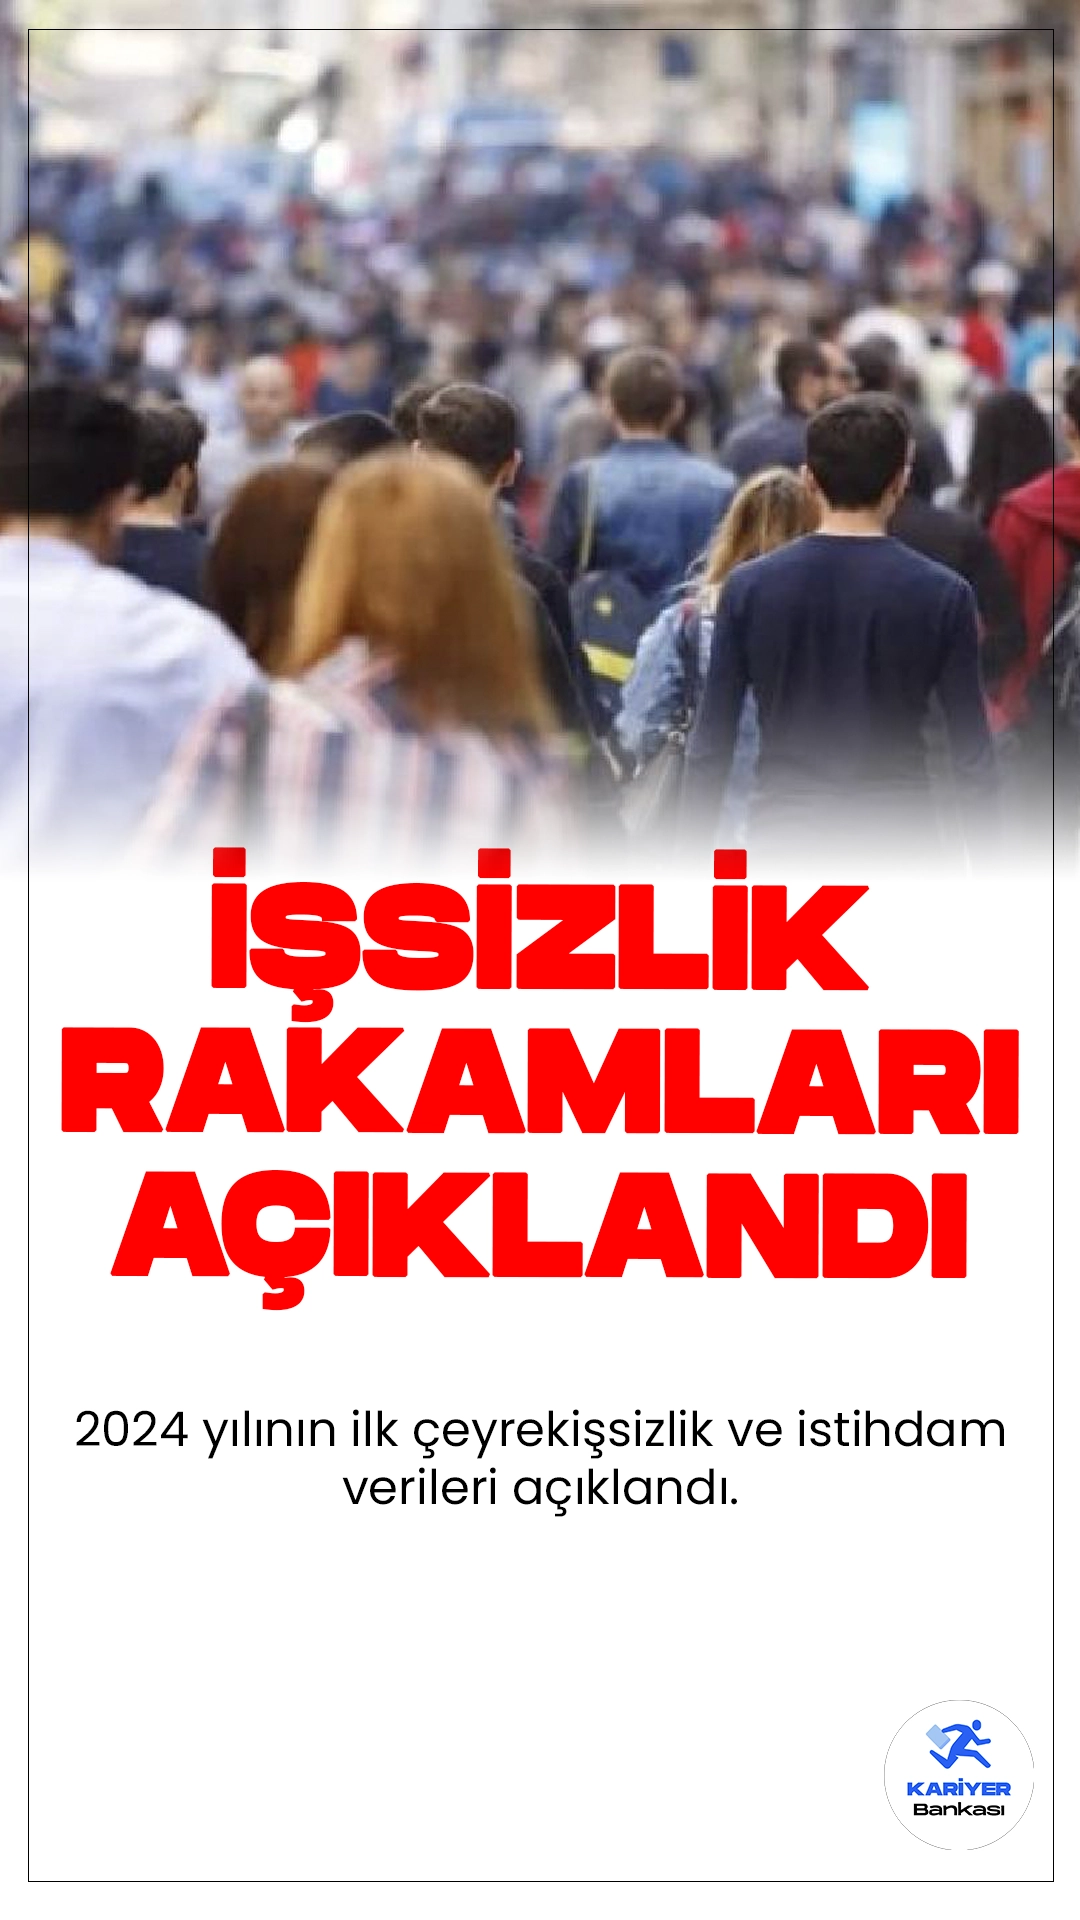 2024 Yılının İlk Çeyrek İşsizlik ve İstihdam Verileri Açıklandı.2024 yılının ilk çeyreğinde Türkiye'deki işsizlik oranı, bir önceki çeyreğe göre 0,1 puanlık bir azalış göstererek yüzde 8,7 seviyesine indi. Aynı dönemde, işsiz sayısı 3 milyon 105 bin kişi olarak kaydedildi.